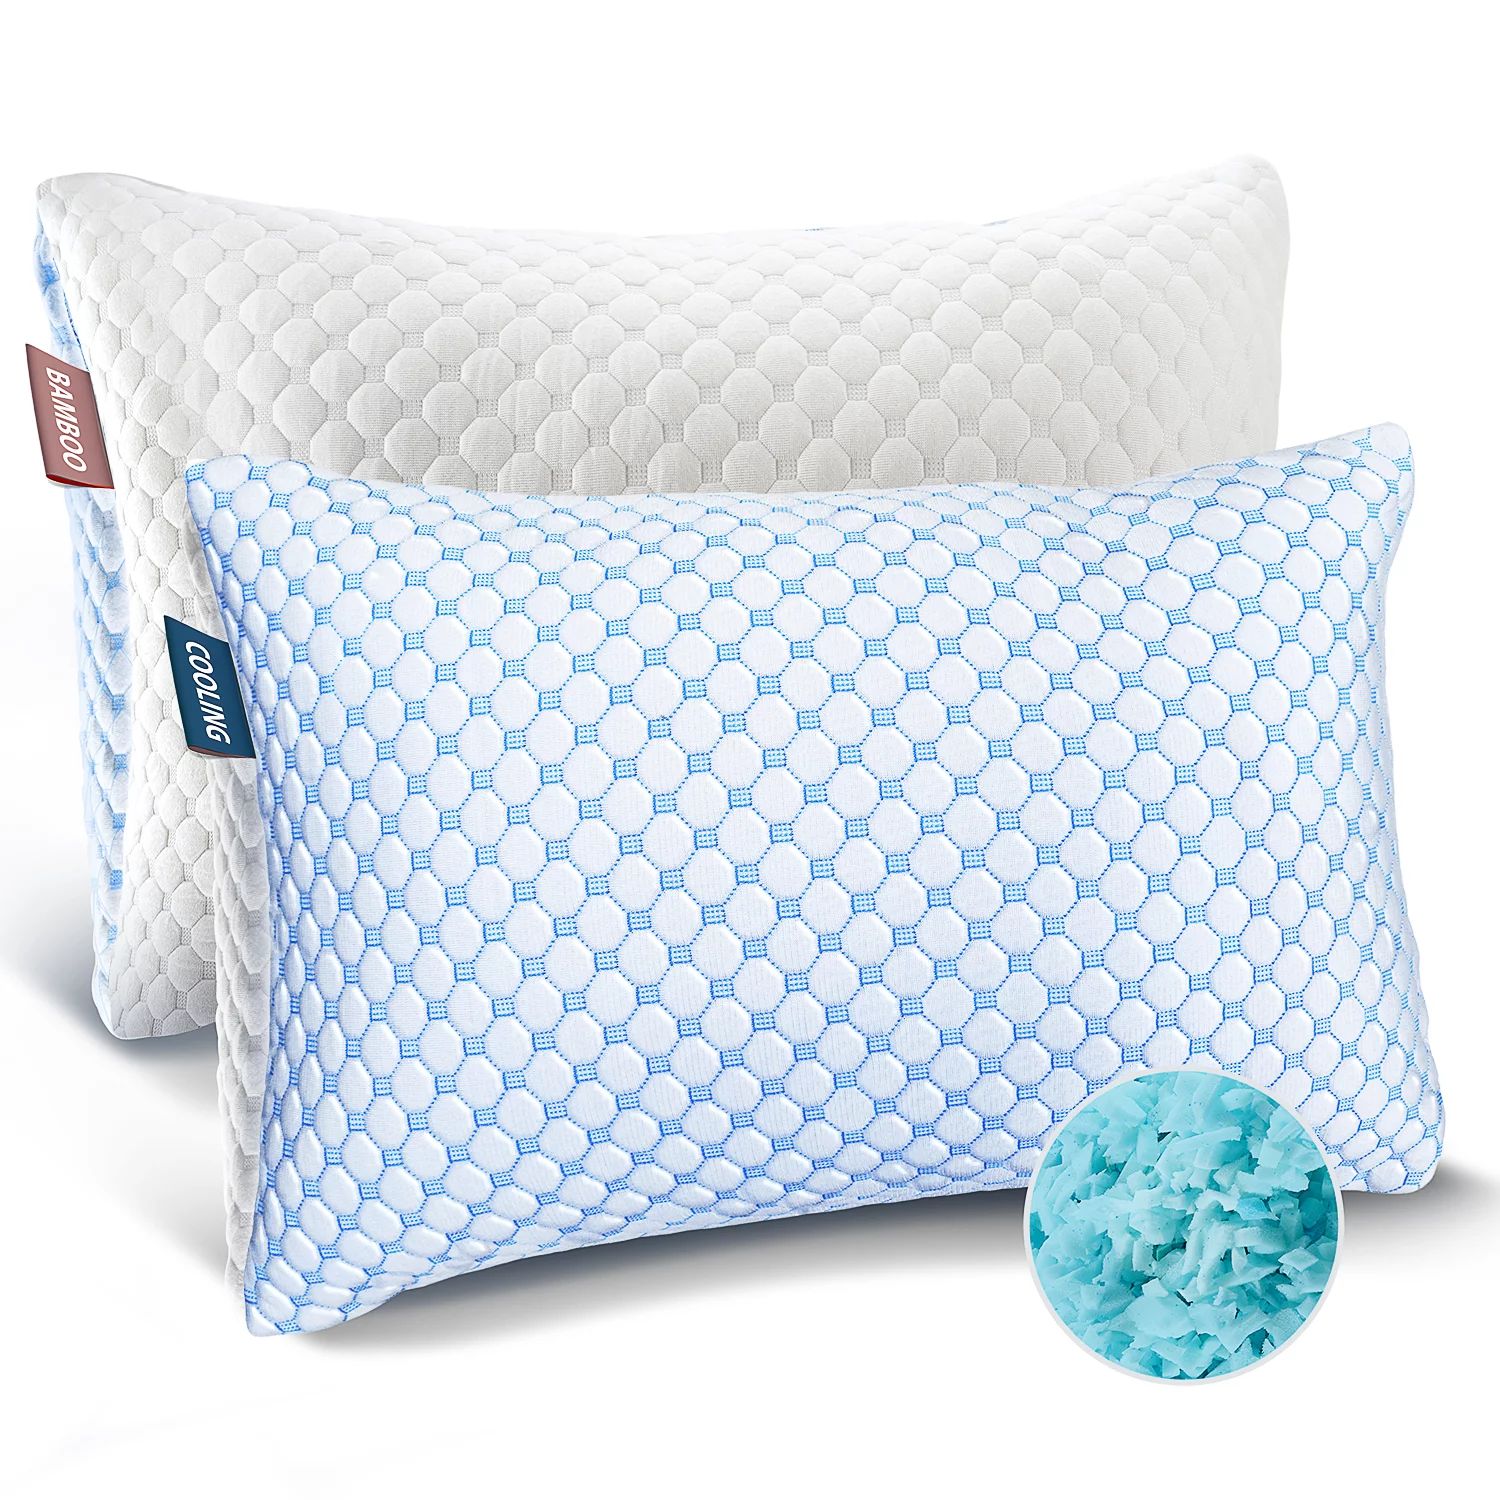 Nestl Temperature Regulating Reversible Cooling Pillow, Memory Foam Pillow, Standard/Queen Pillow... | Walmart (US)